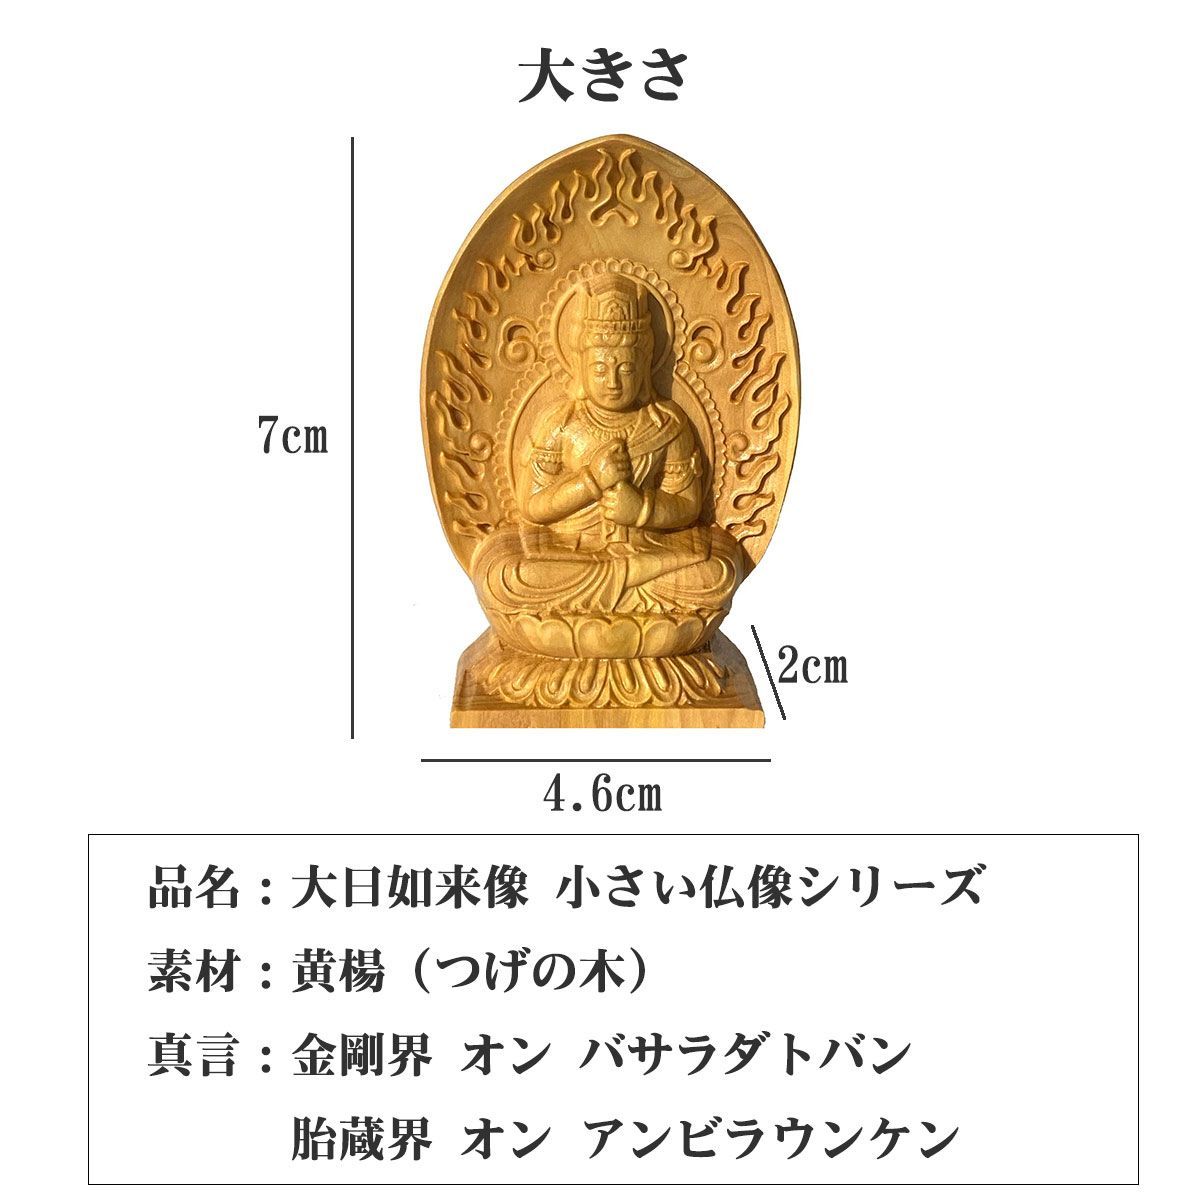 成田山 護符 お守り 仏像 大日如来 骨董 携帯仏 懐中仏 仏教美術 